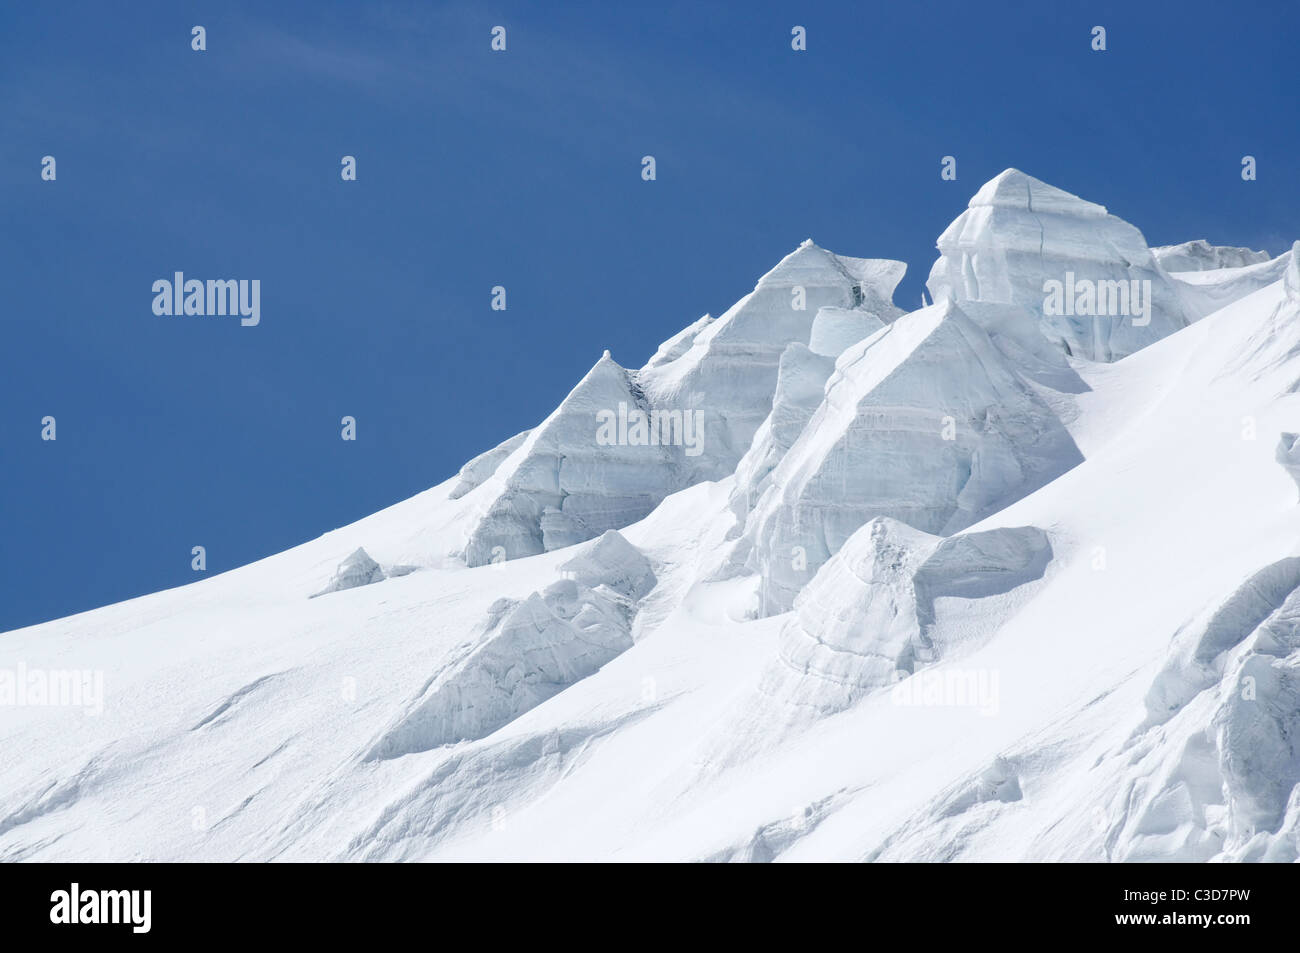 Falaises de glace, séracs et tours de glace sur un glacier dans les Alpes suisses. Banque D'Images